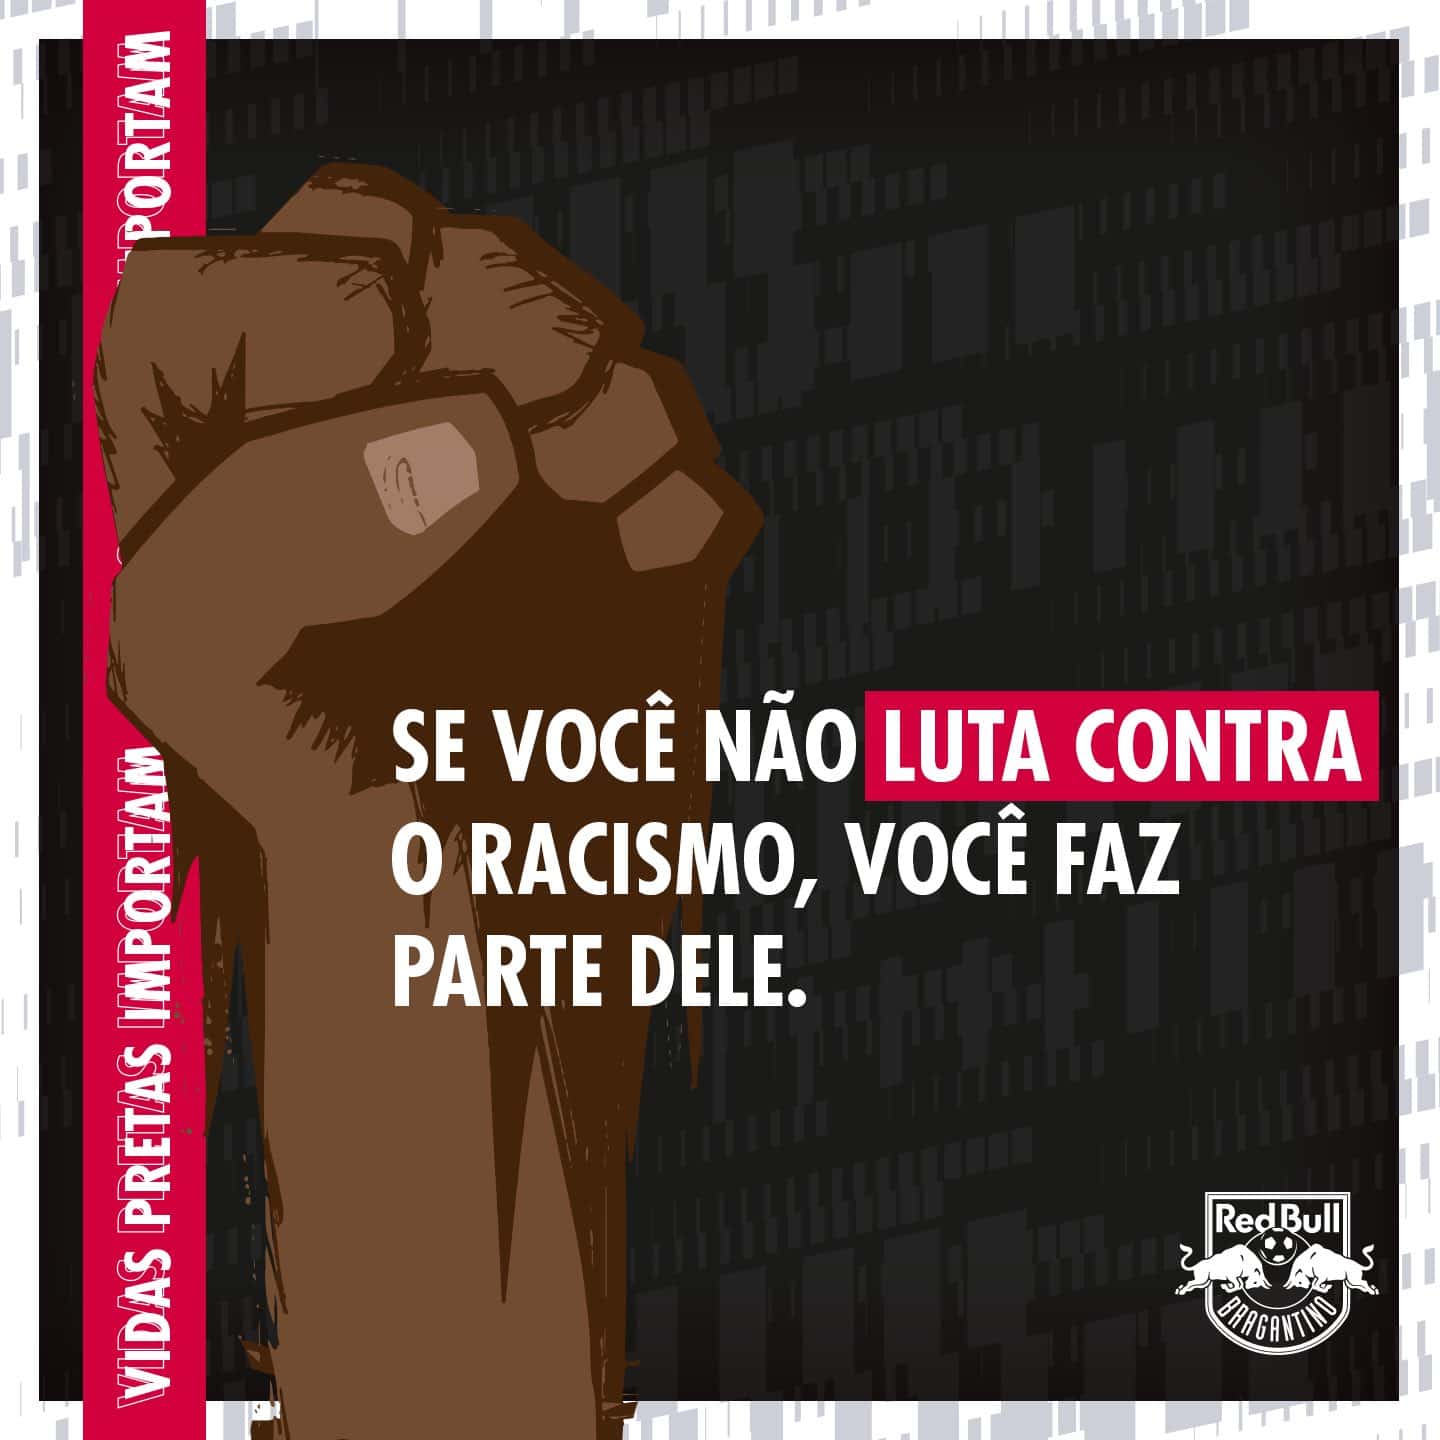 ‘Se você não luta contra o racismo, você faz parte dele’, escreveu o Bragantino nas redes sociais, e também lembrou de Mauro Silva, Silvio e Ligger na corrente.